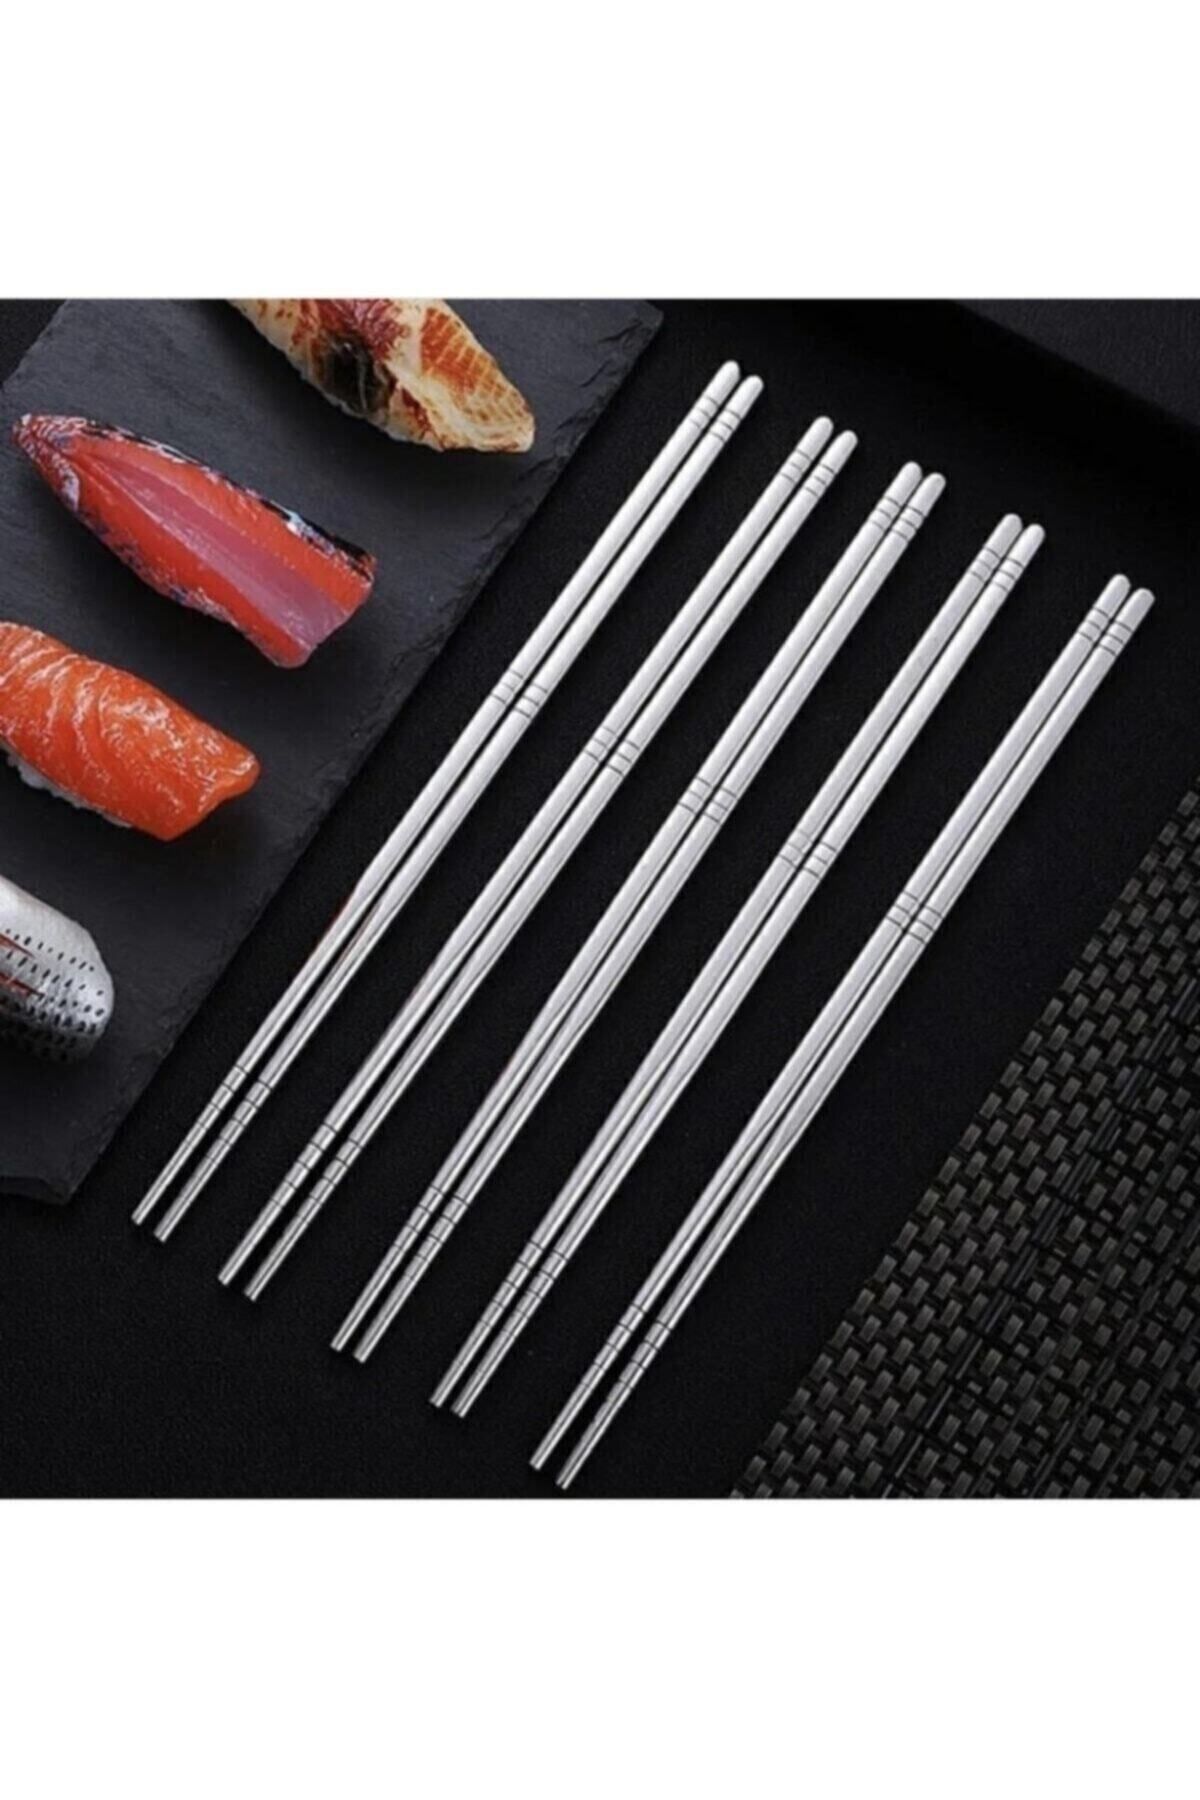 hediyeofisi Kore Yemek Çubuğu Paslanmaz Metal Chopstick 5'li